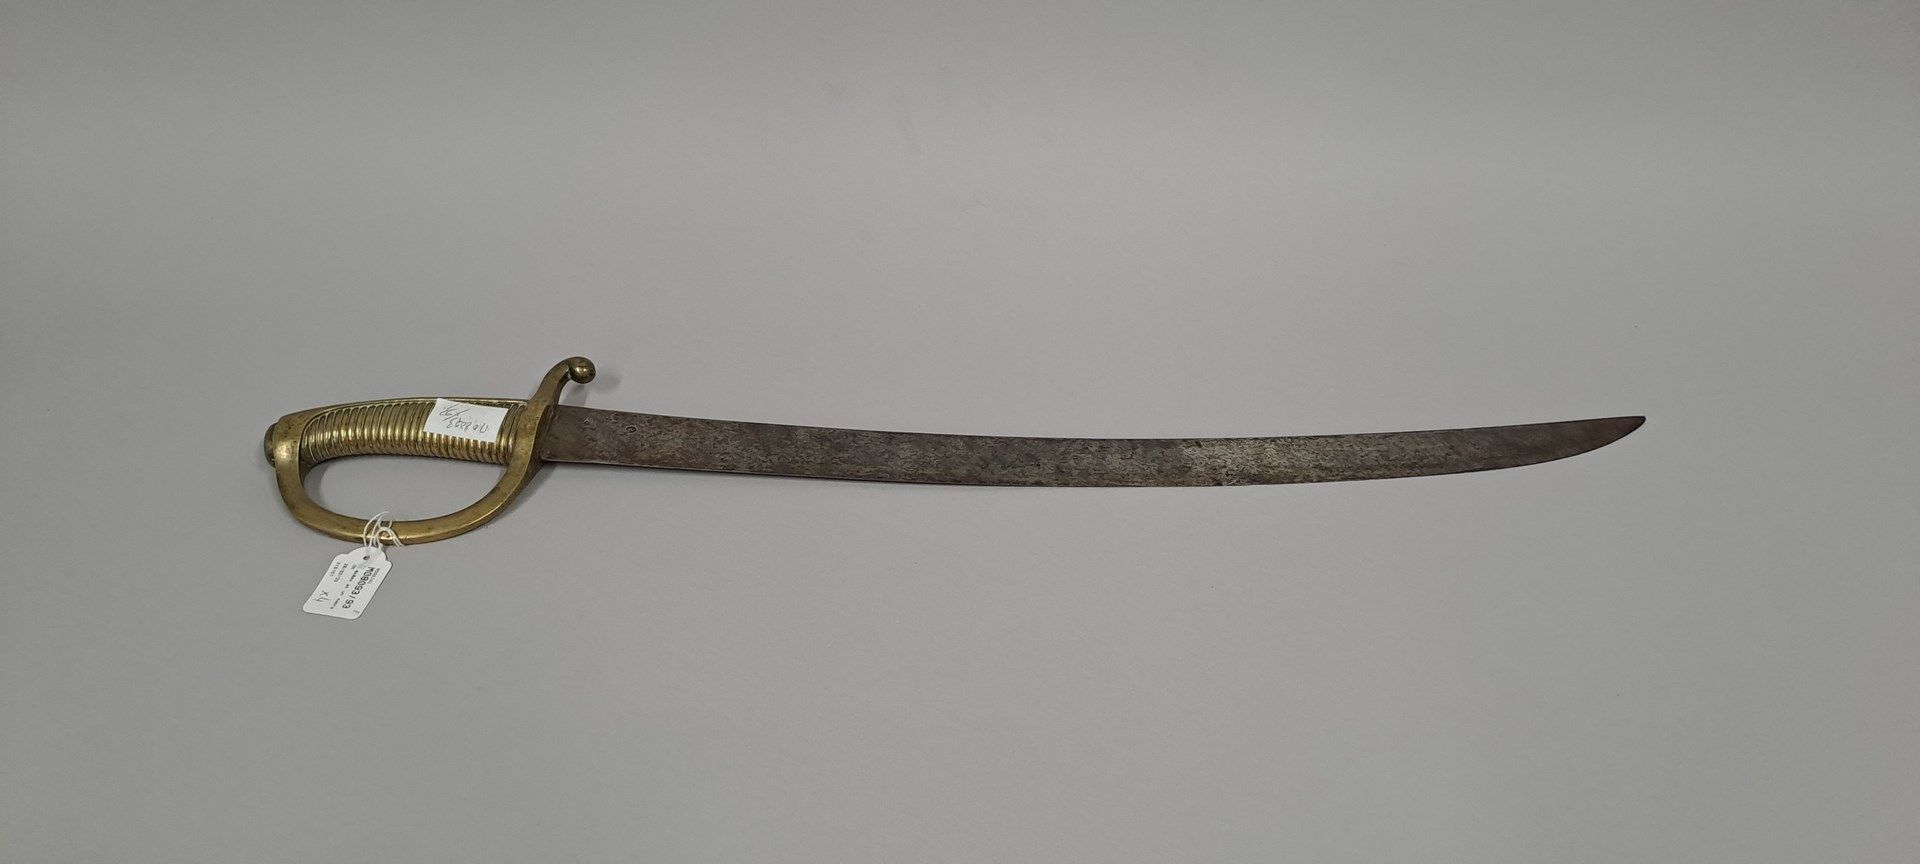 Null 更轻的剑。刀片日期为1817年的Royale制造。警卫队盖有VERSAILLES的印章。证券公司